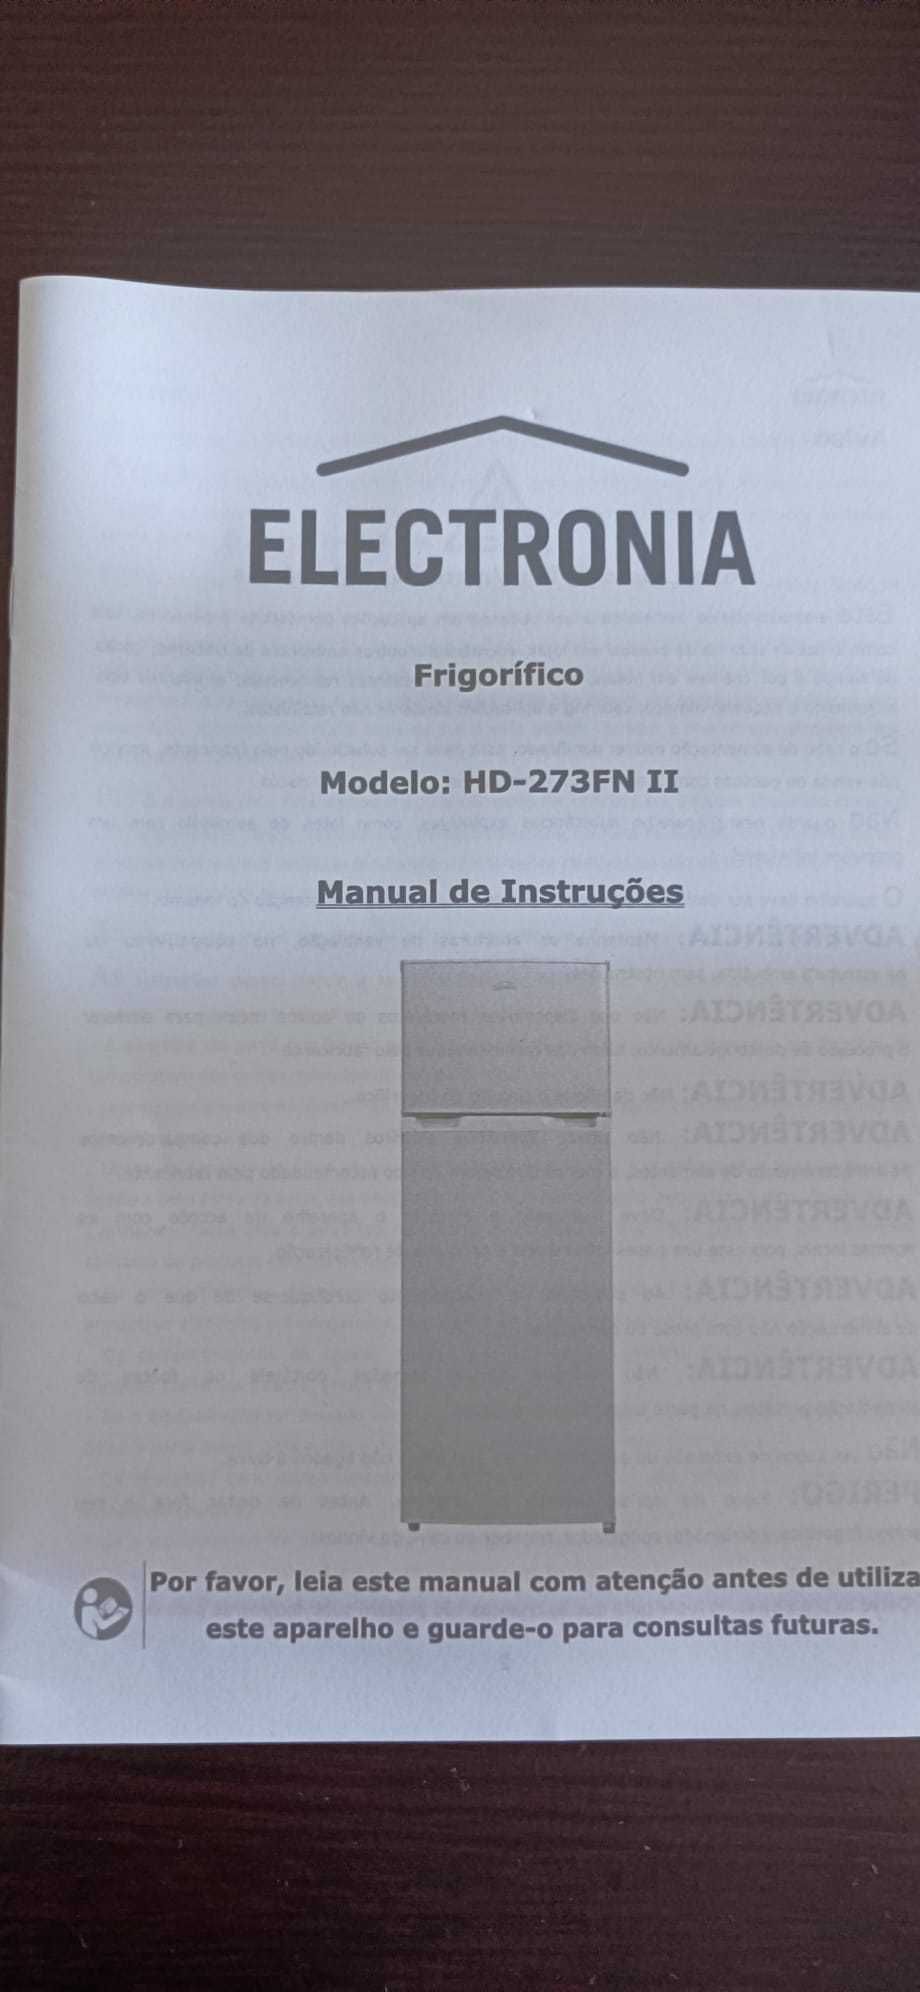 FRIGORÍFICO seminovo, ELECTRONIA HD-273FN II, 2 P, Volume 204 Litros